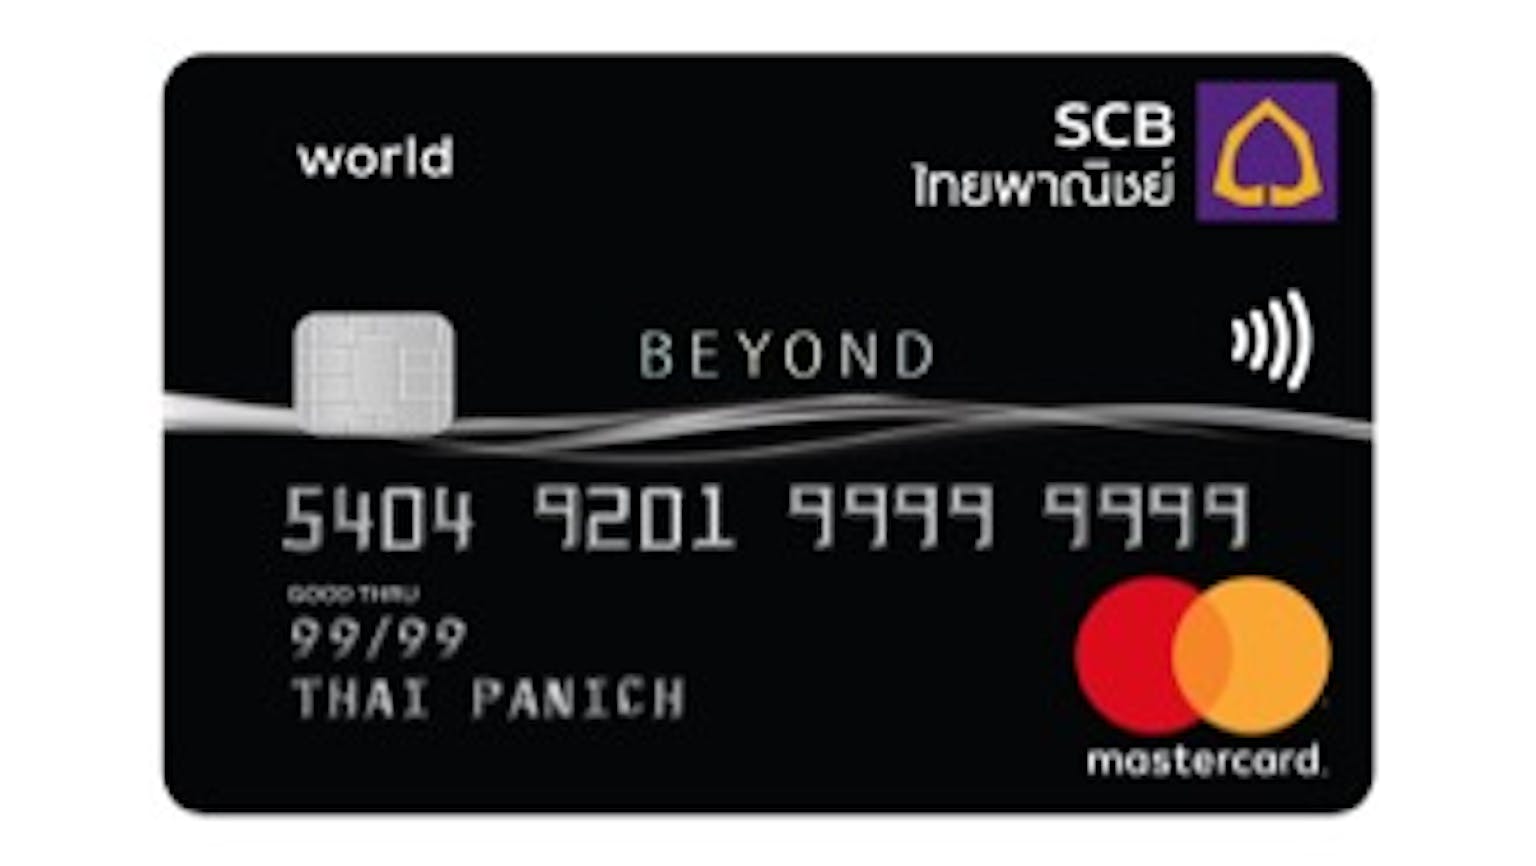 บัตรเครดิตเอสซีบี บิยอนด์ | ธนาคารไทยพาณิชย์ | Moneyduck Thailand